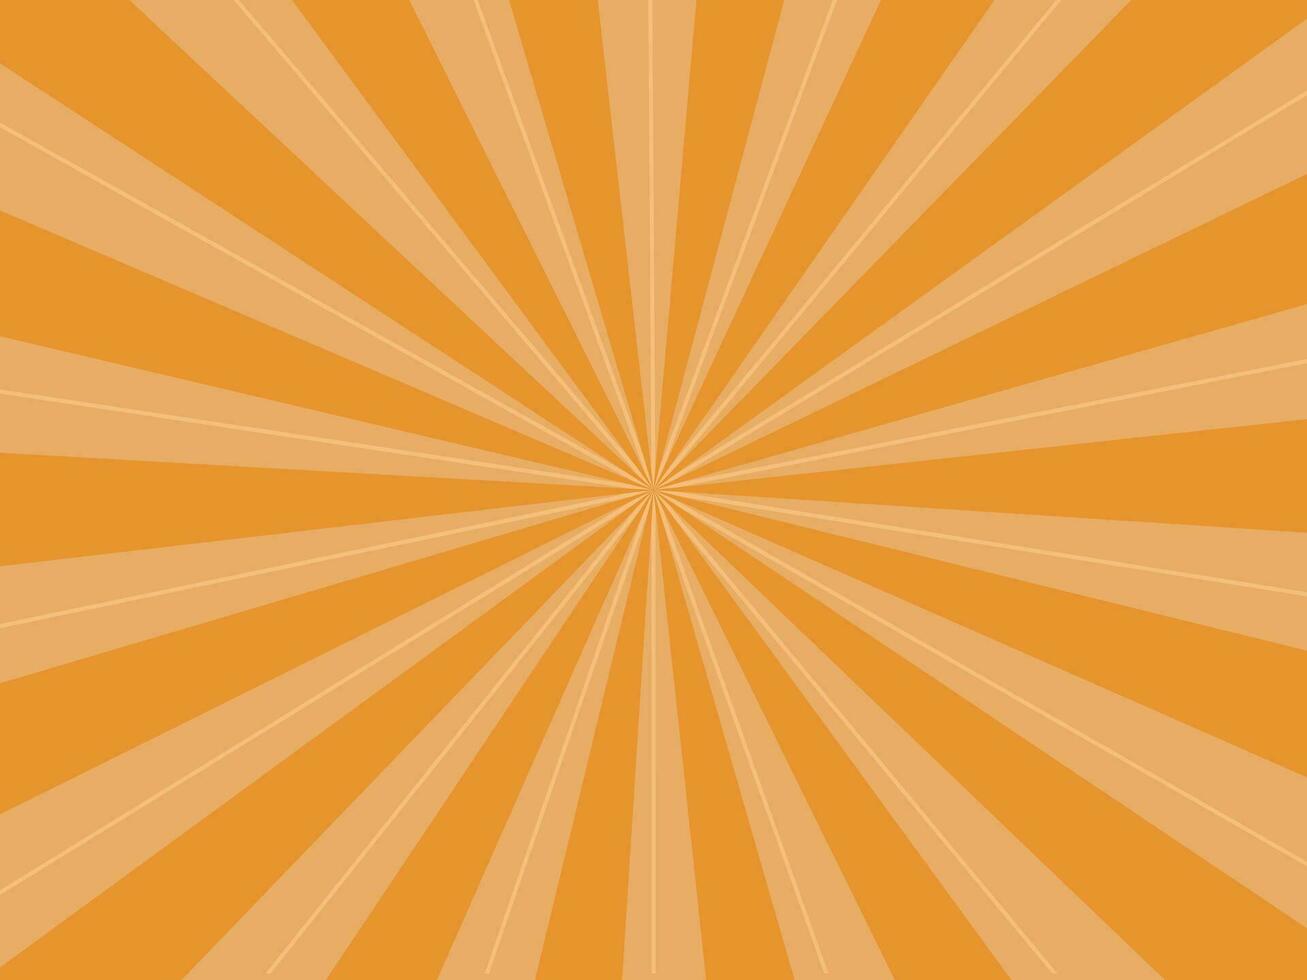 Sunburst Strahlen Orange Hintergrund. Sonnenstrahl Star platzen. Vektor Illustration